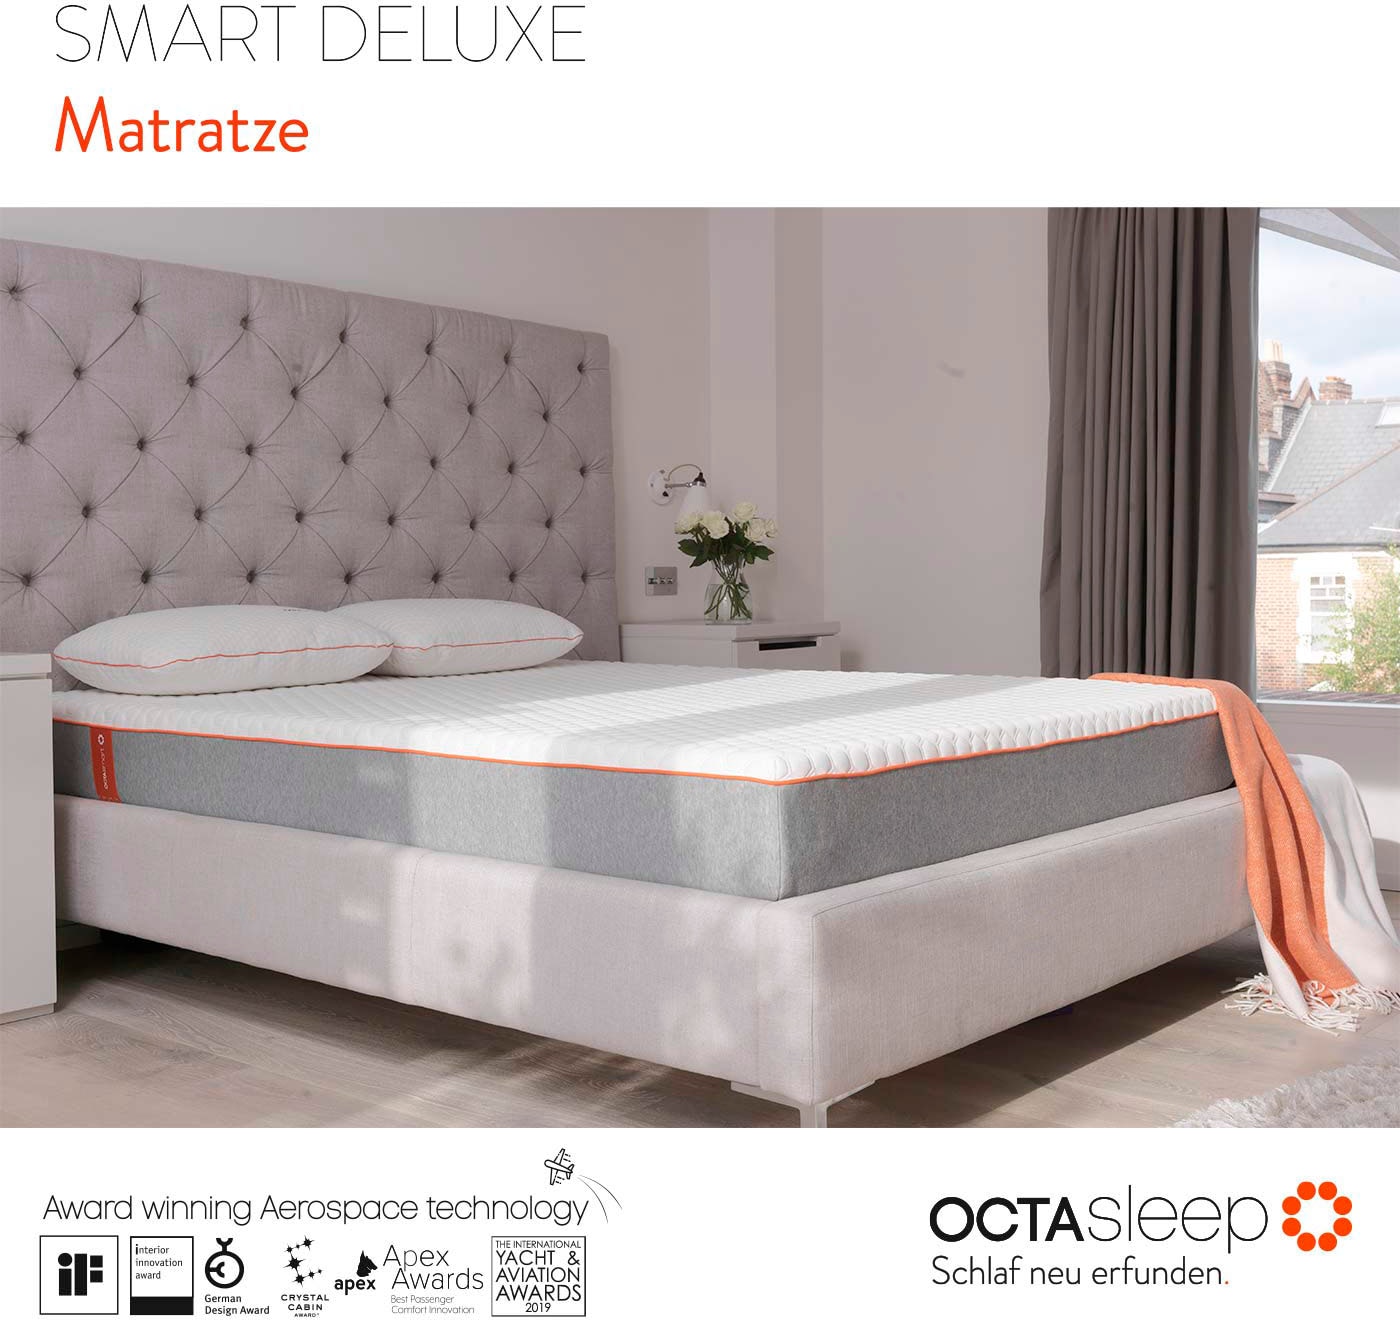 OCTAsleep Komfortschaummatratze »Octasleep Smart Deluxe Mattress«, 20 cm hoch, Raumgewicht: 38 kg/m³, (1 St., 1-tlg.)